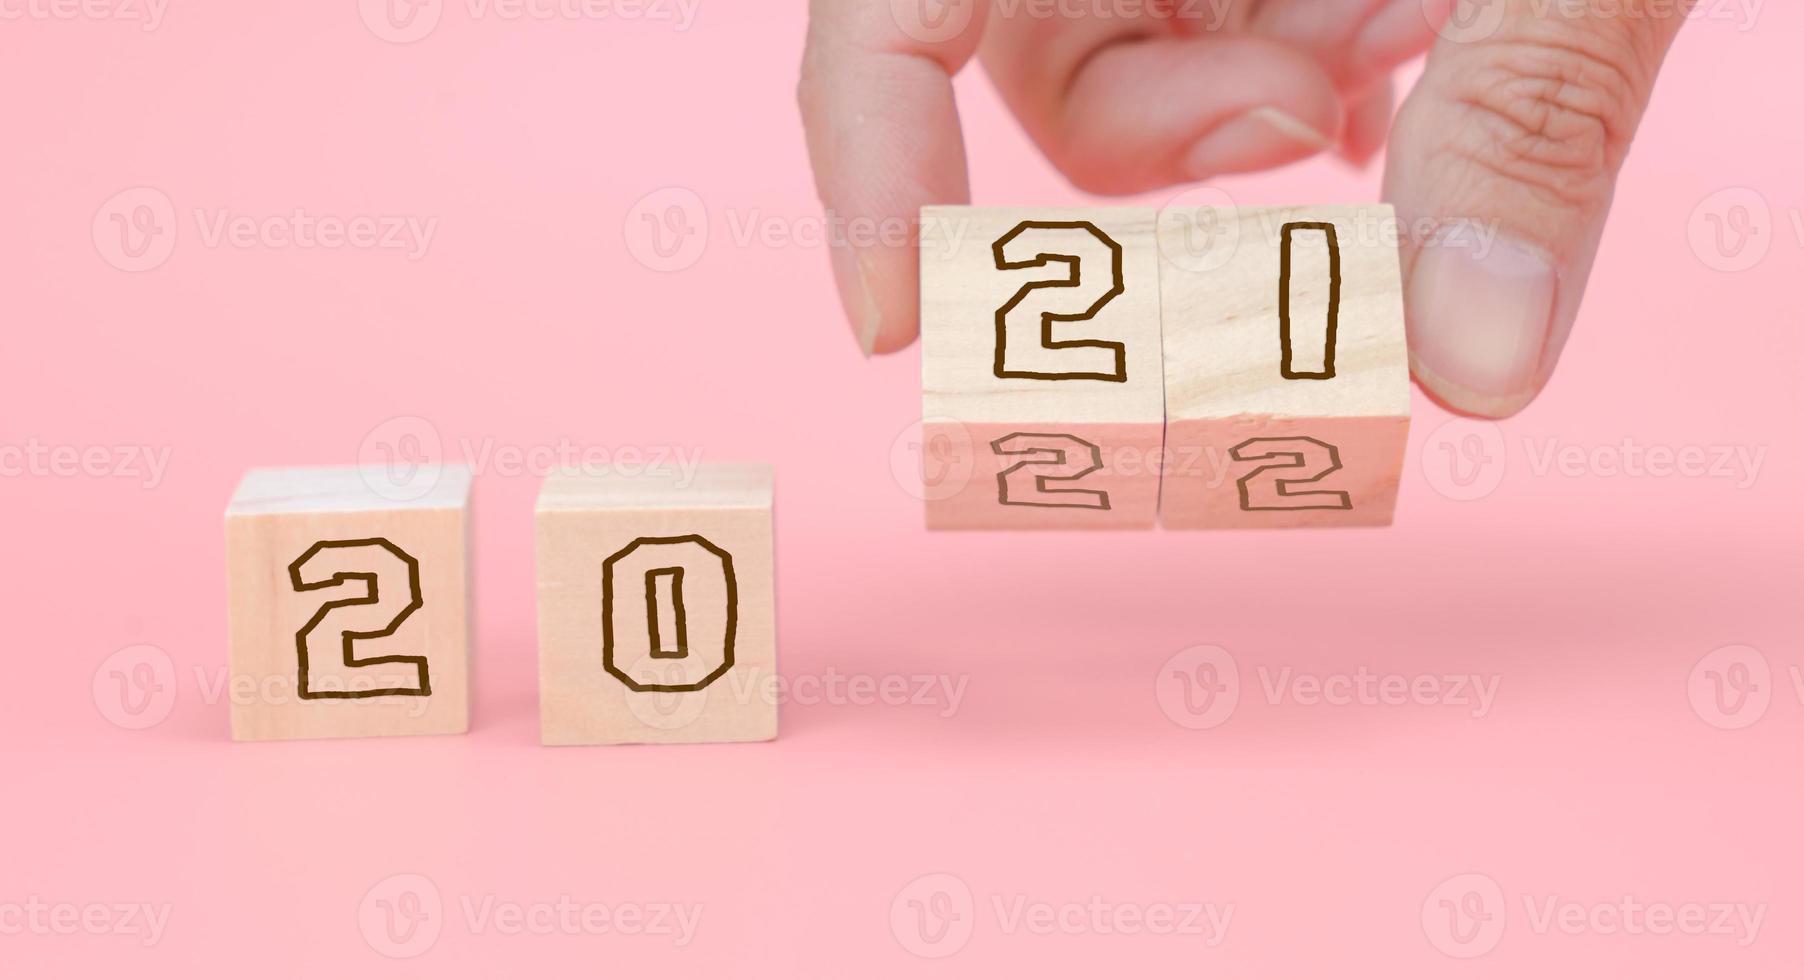 número 2021 e 2022 em bloco de madeira para o ano novo. começar ano novo foto